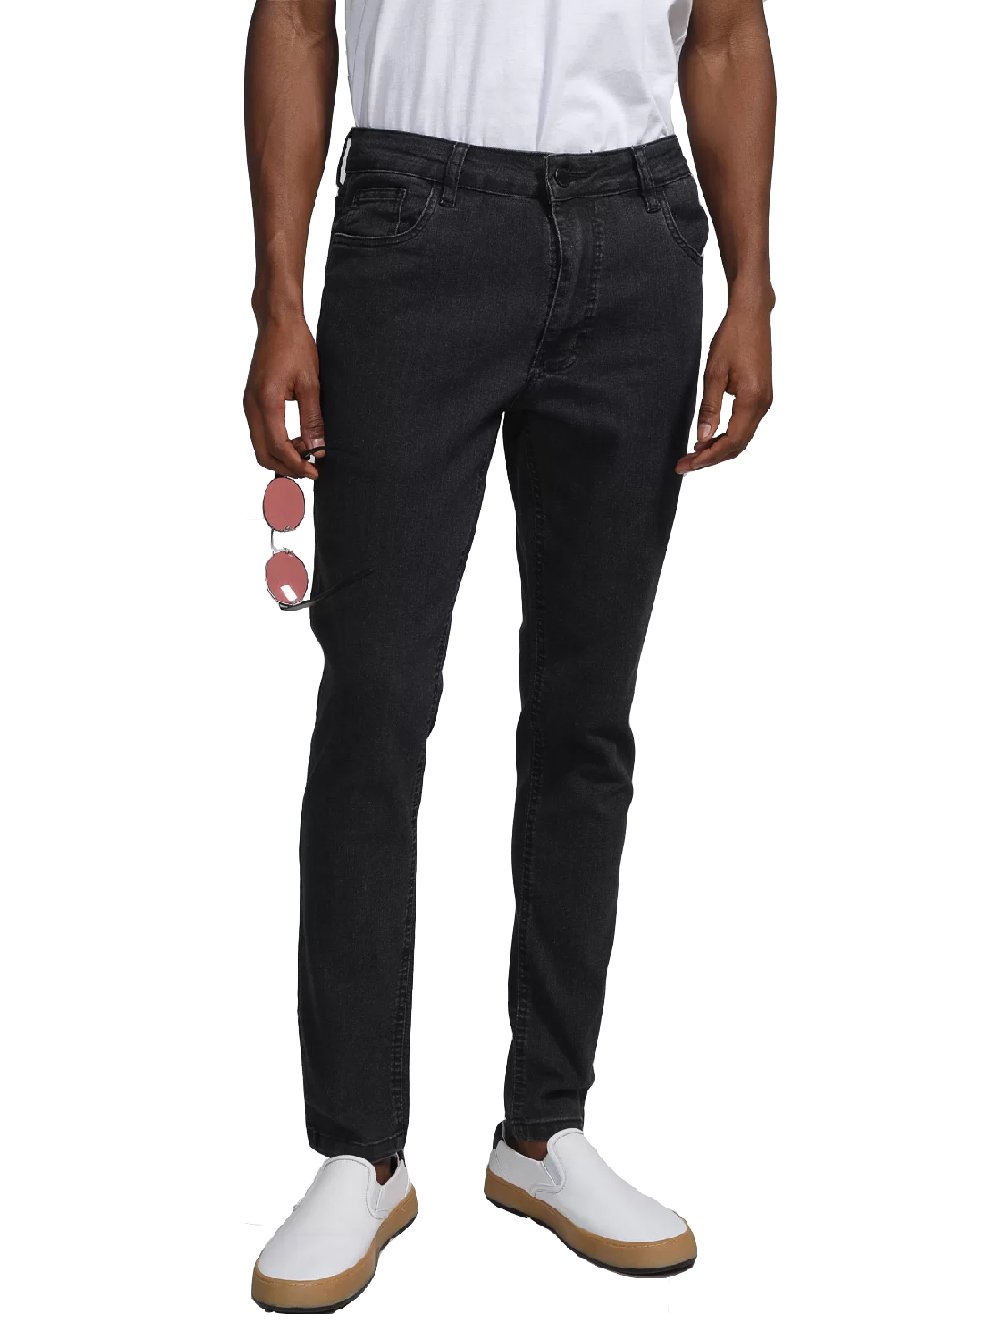 Calça Aeropostale Jeans Masculina Slim Straight Black Preta